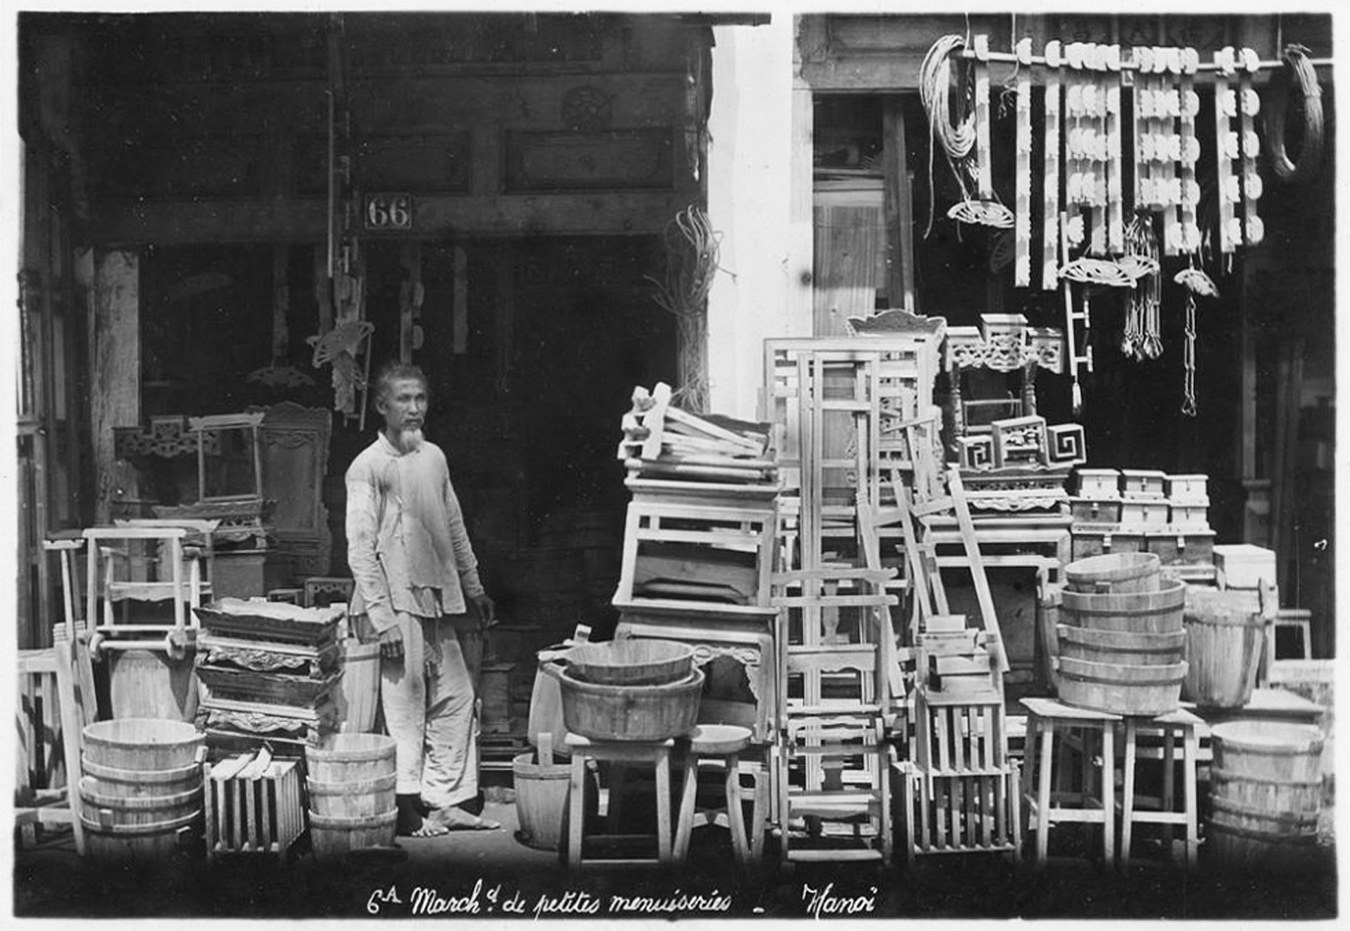 Các cửa hàng ở Hà Nội năm 1950 trông như thế nào?